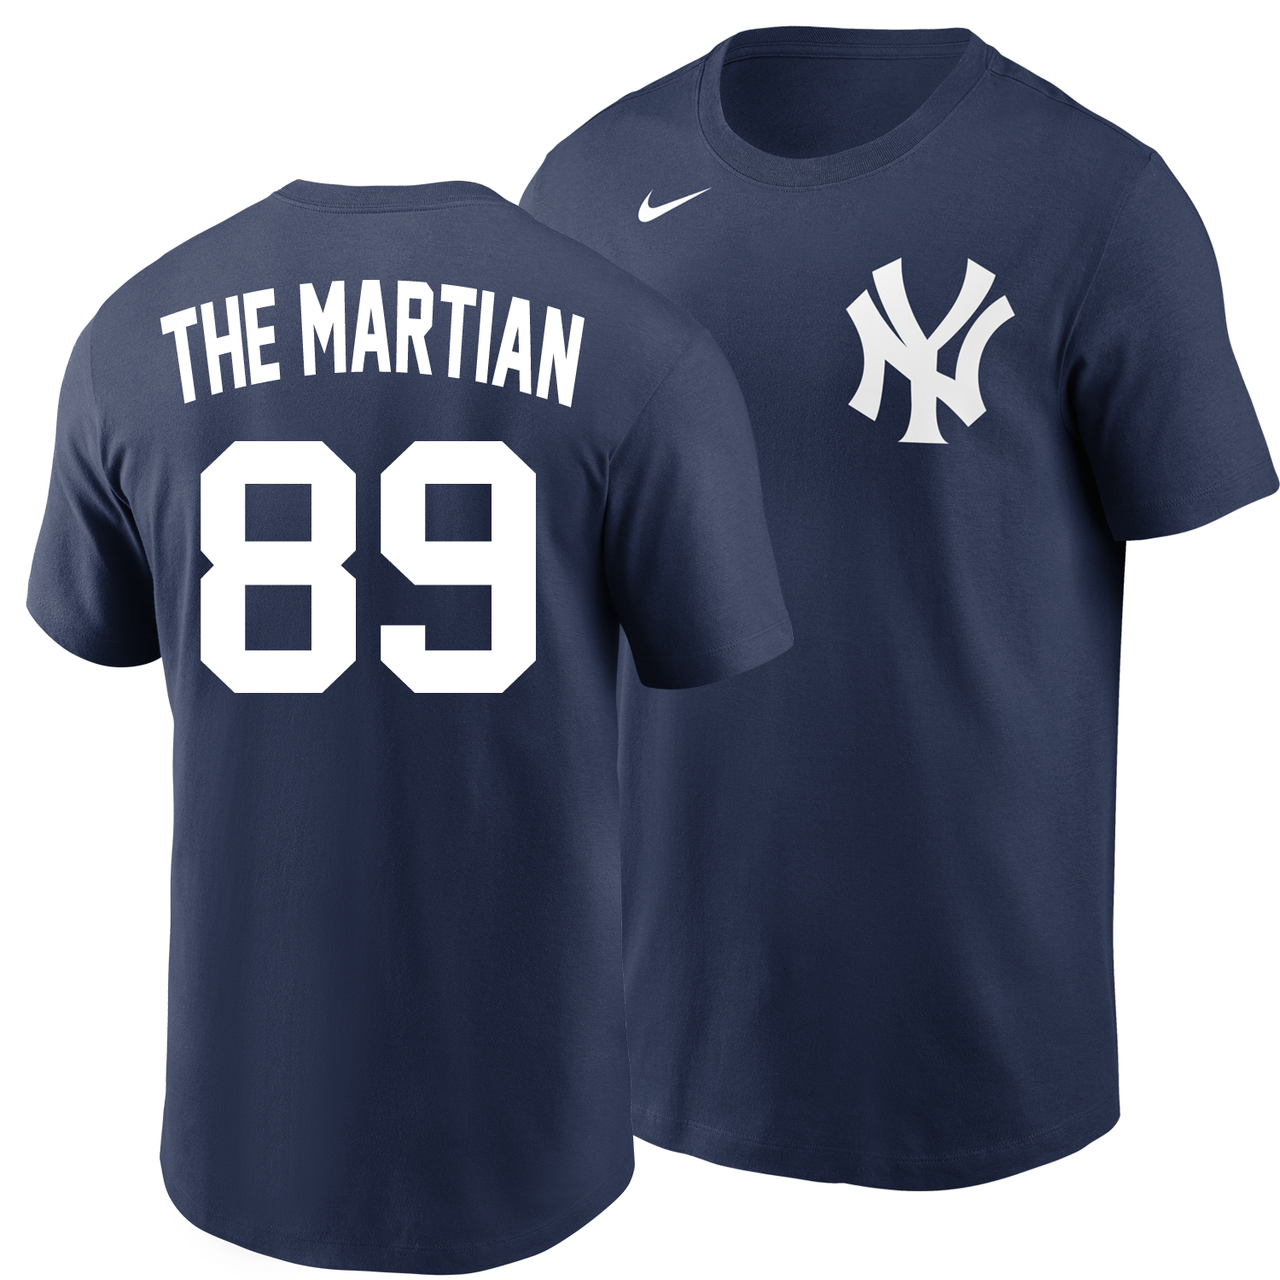 Nike Women's New York Yankees Navy Team T-Shirt